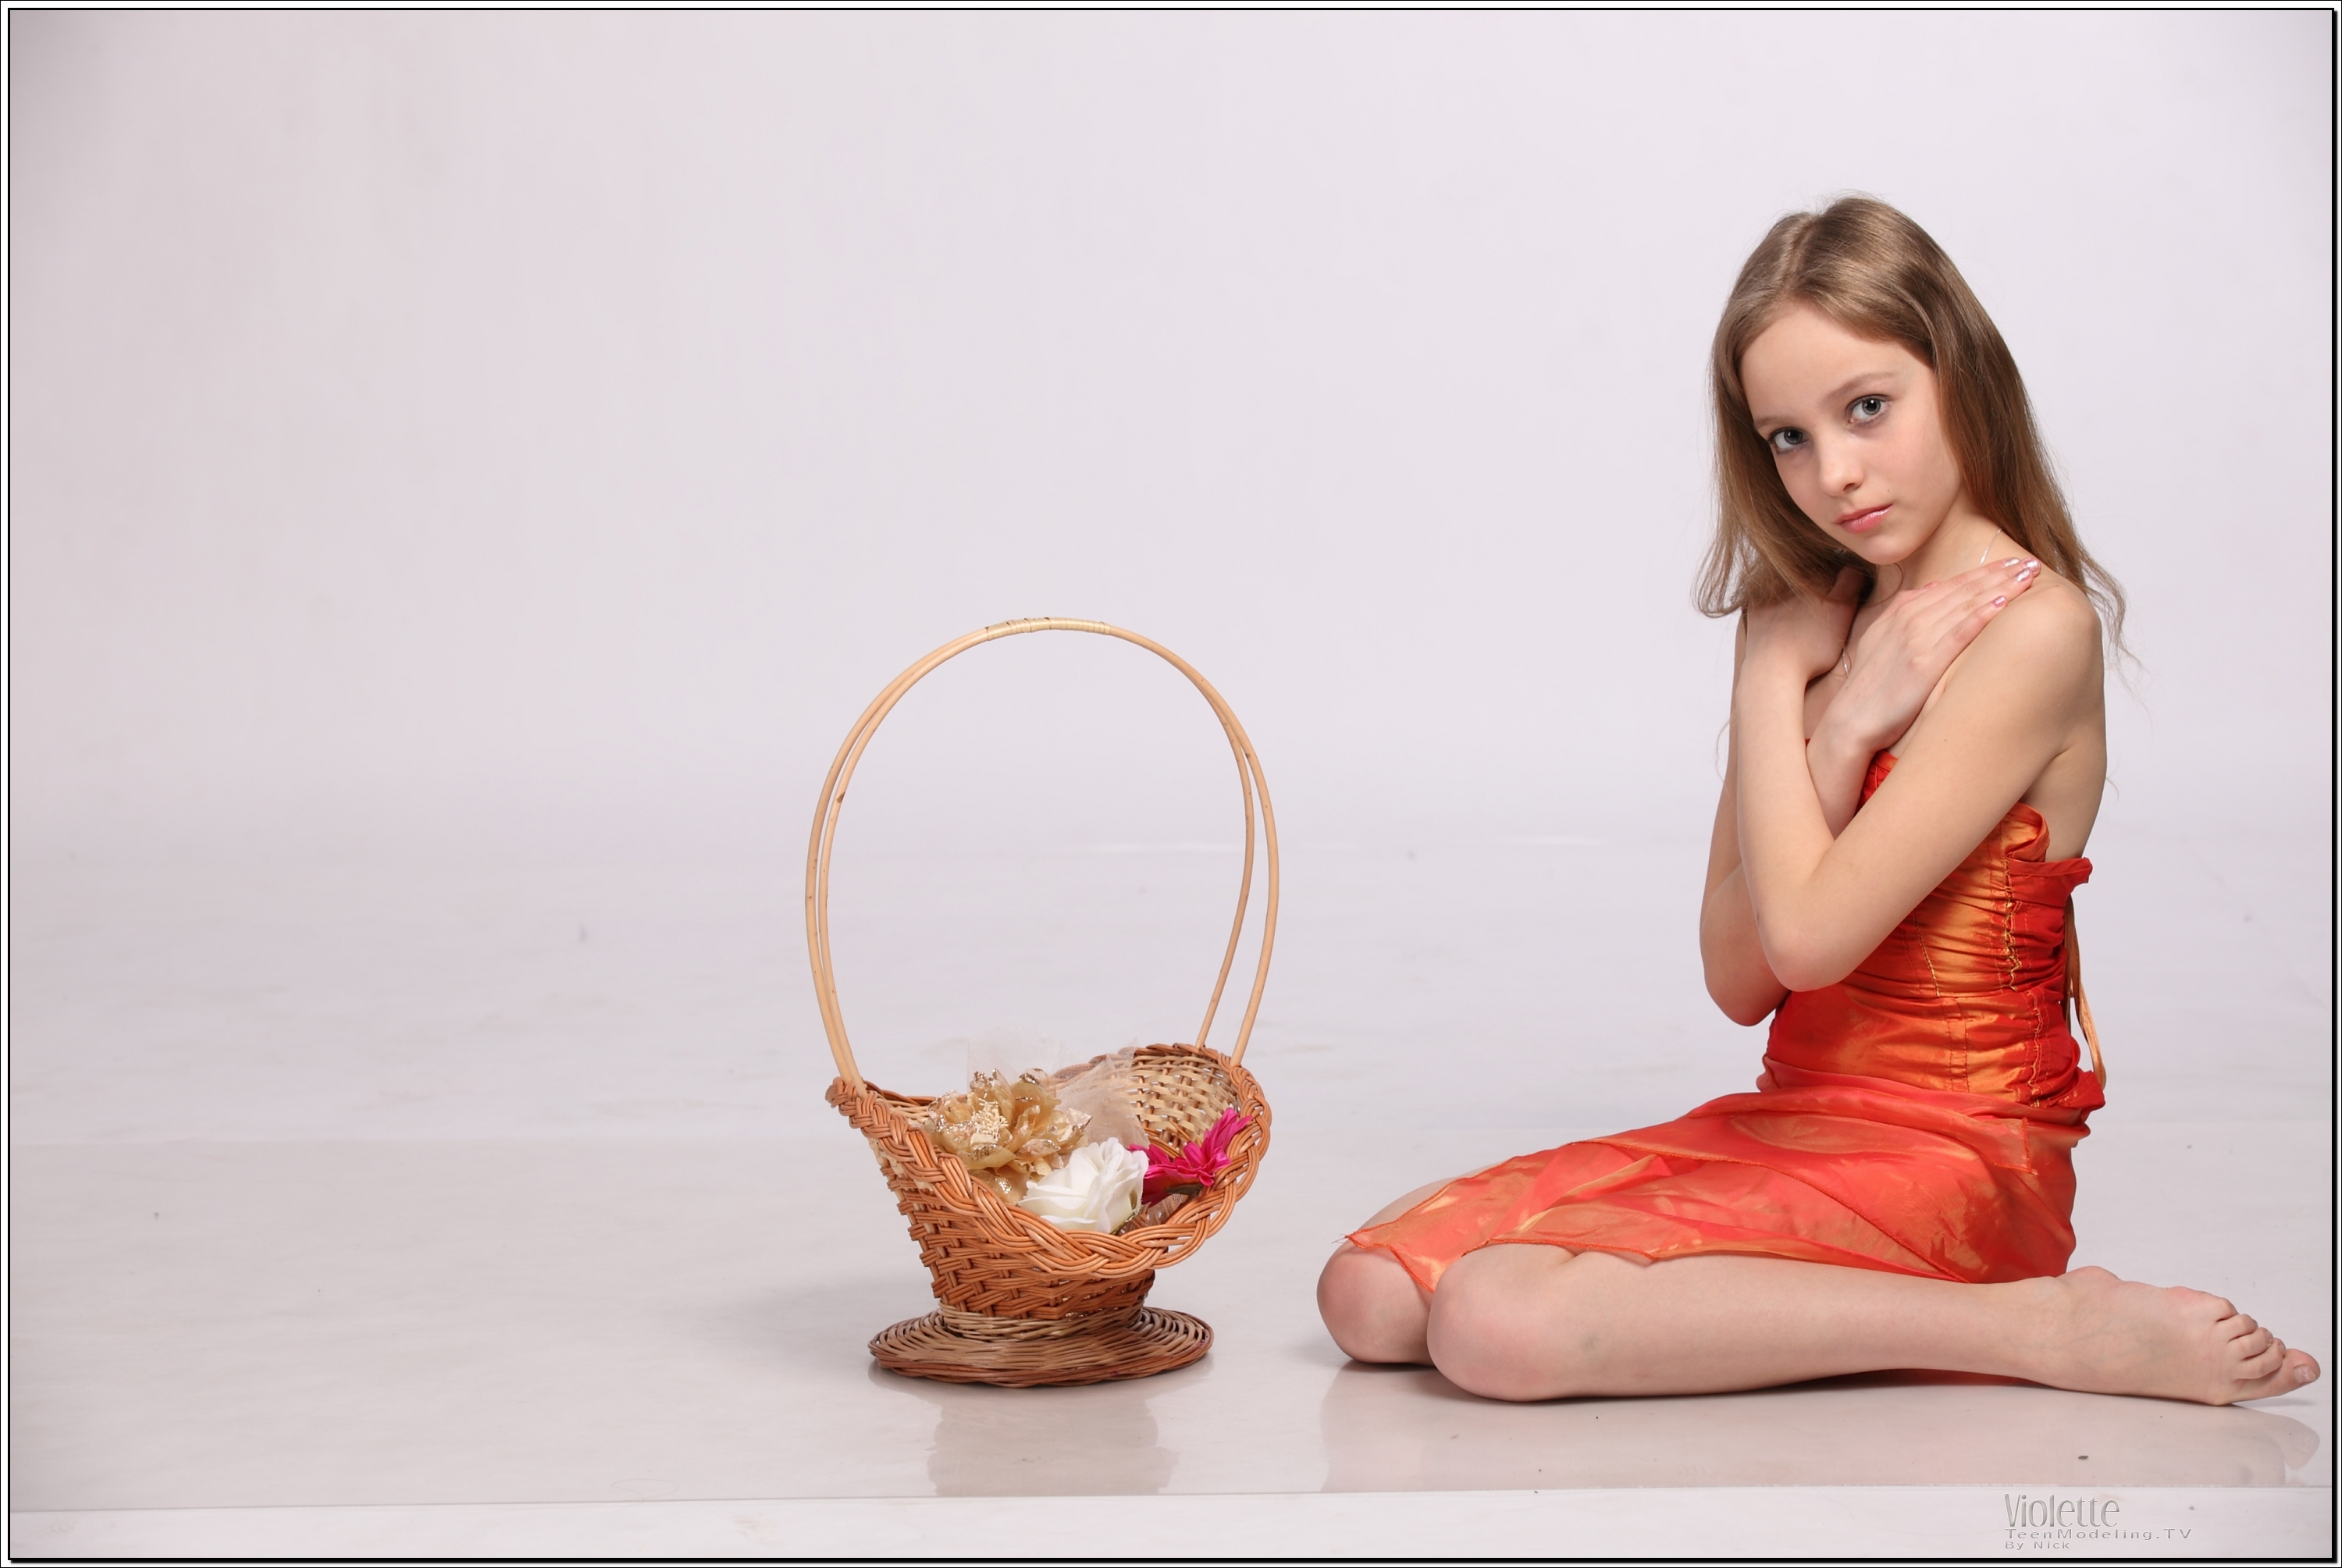 violette_model_orangesheer_teenmodeling_tv_068.jpg